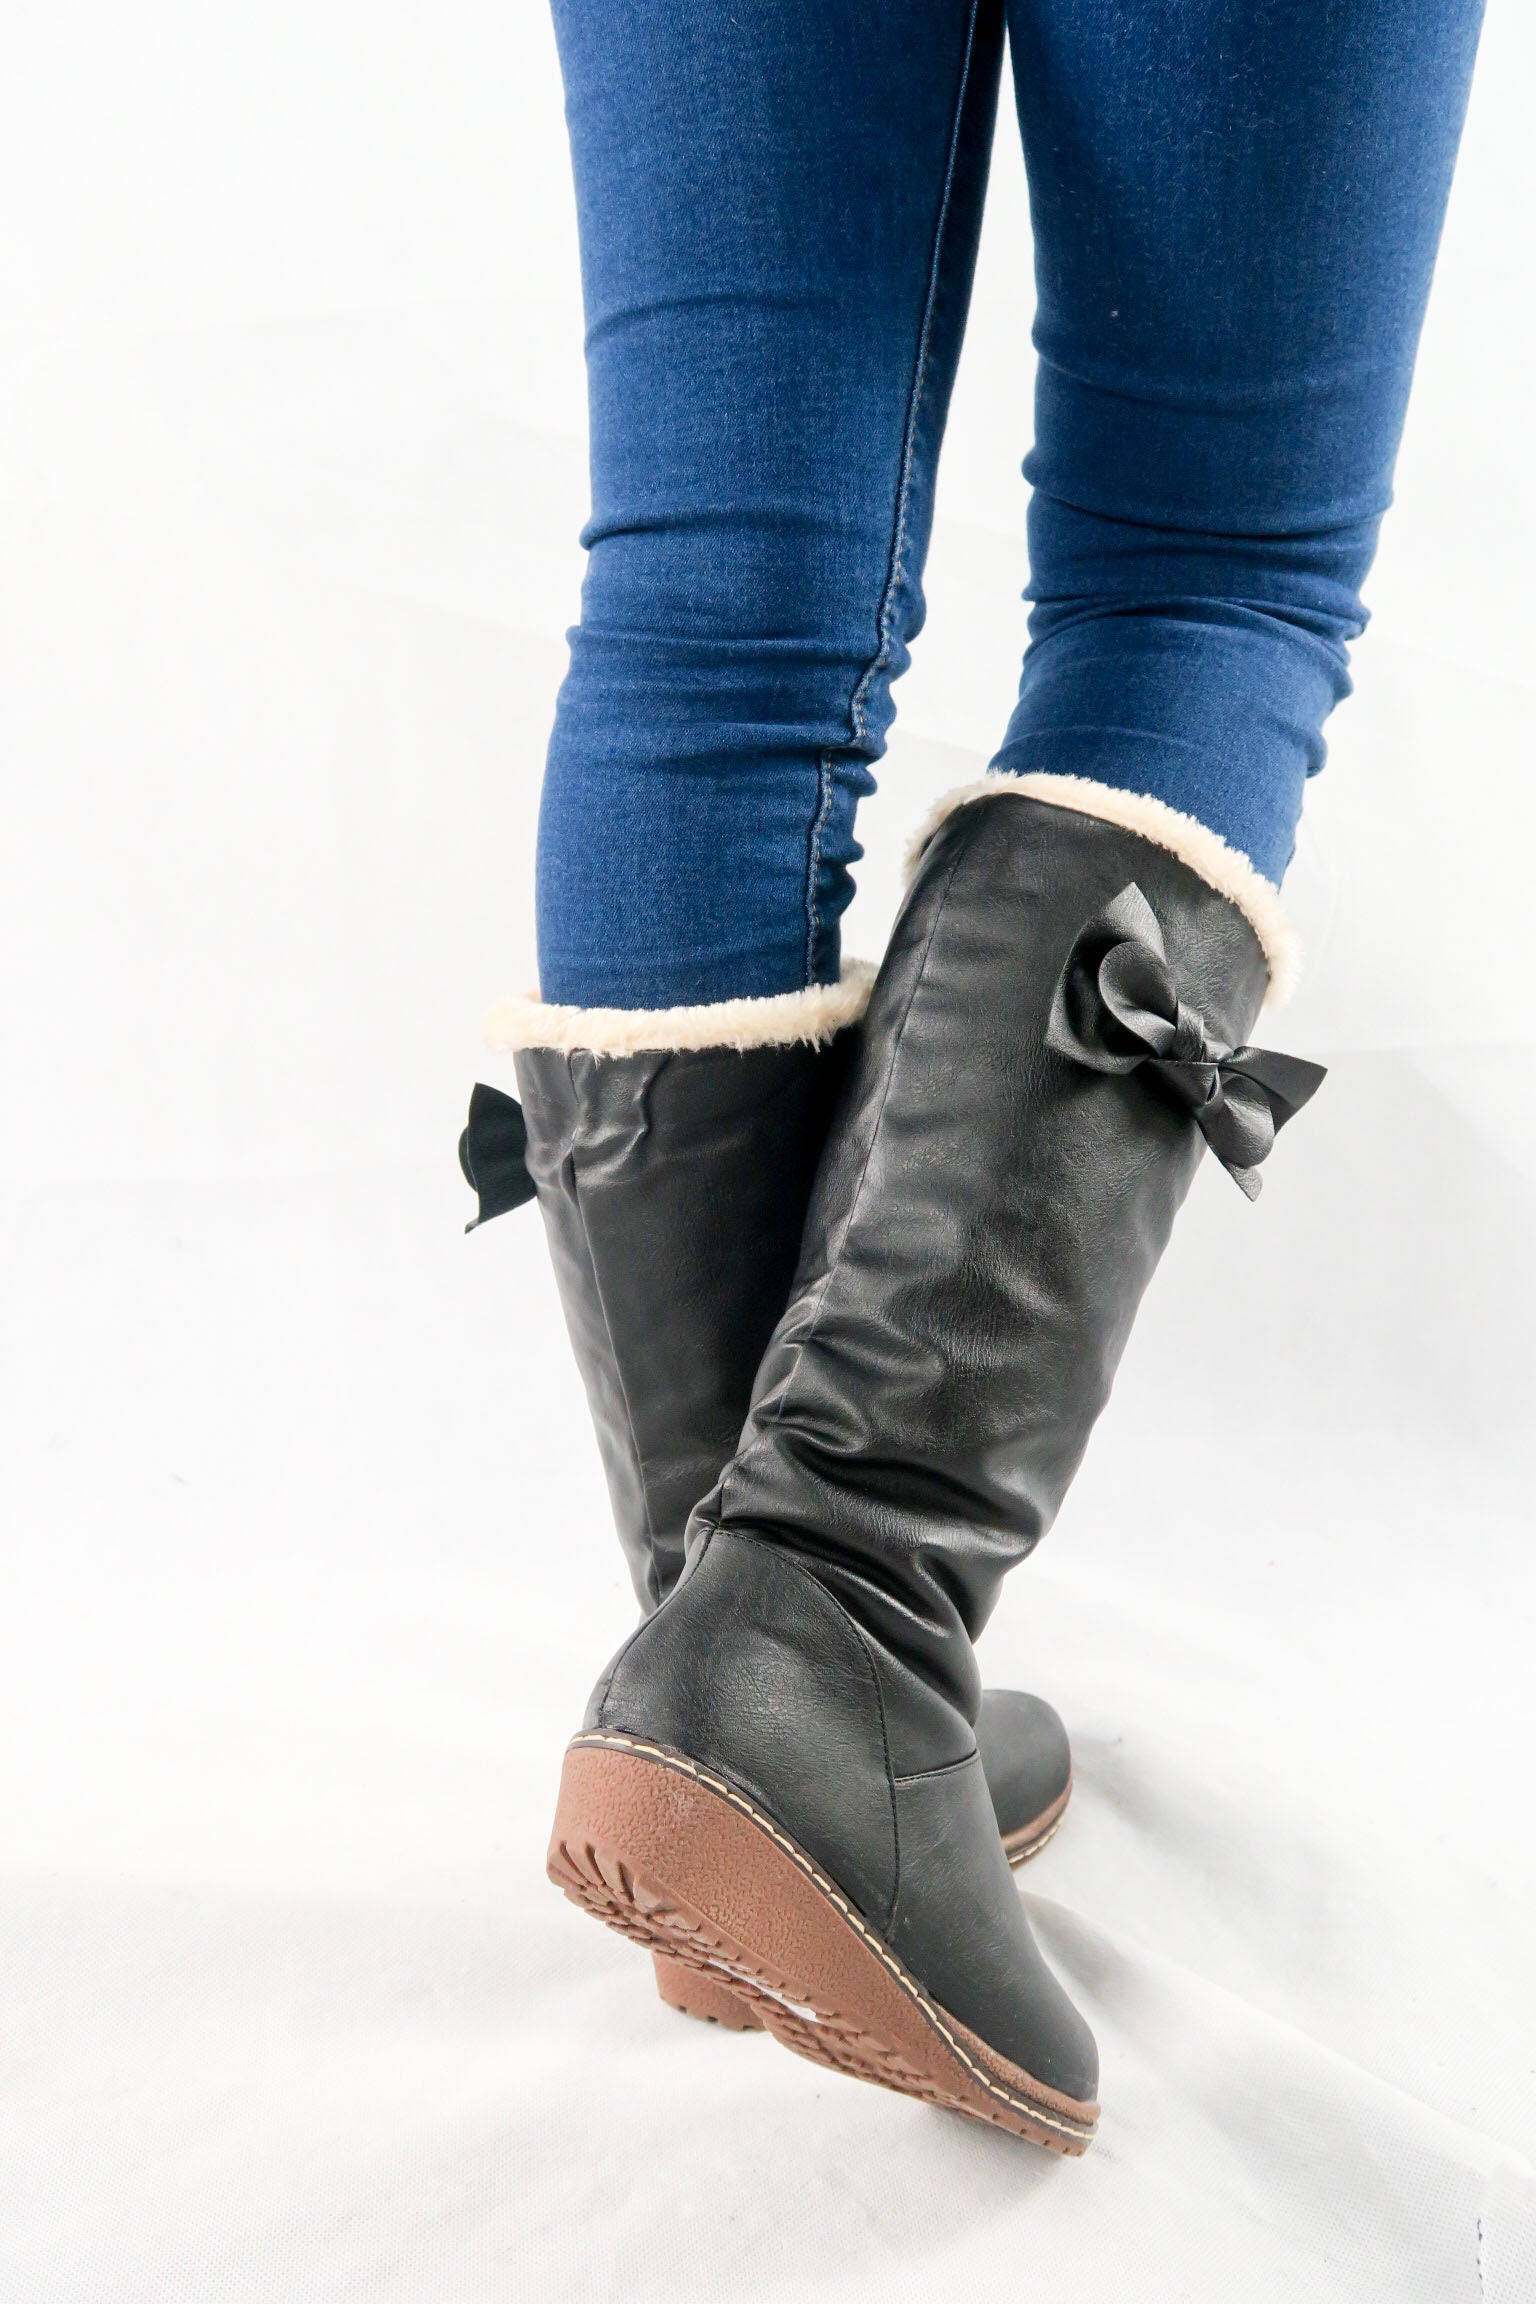 รองเท้าบูทหนังทรงสูงแต่งโบ - Classic Leather Flat To Low Heel Knee High Boots